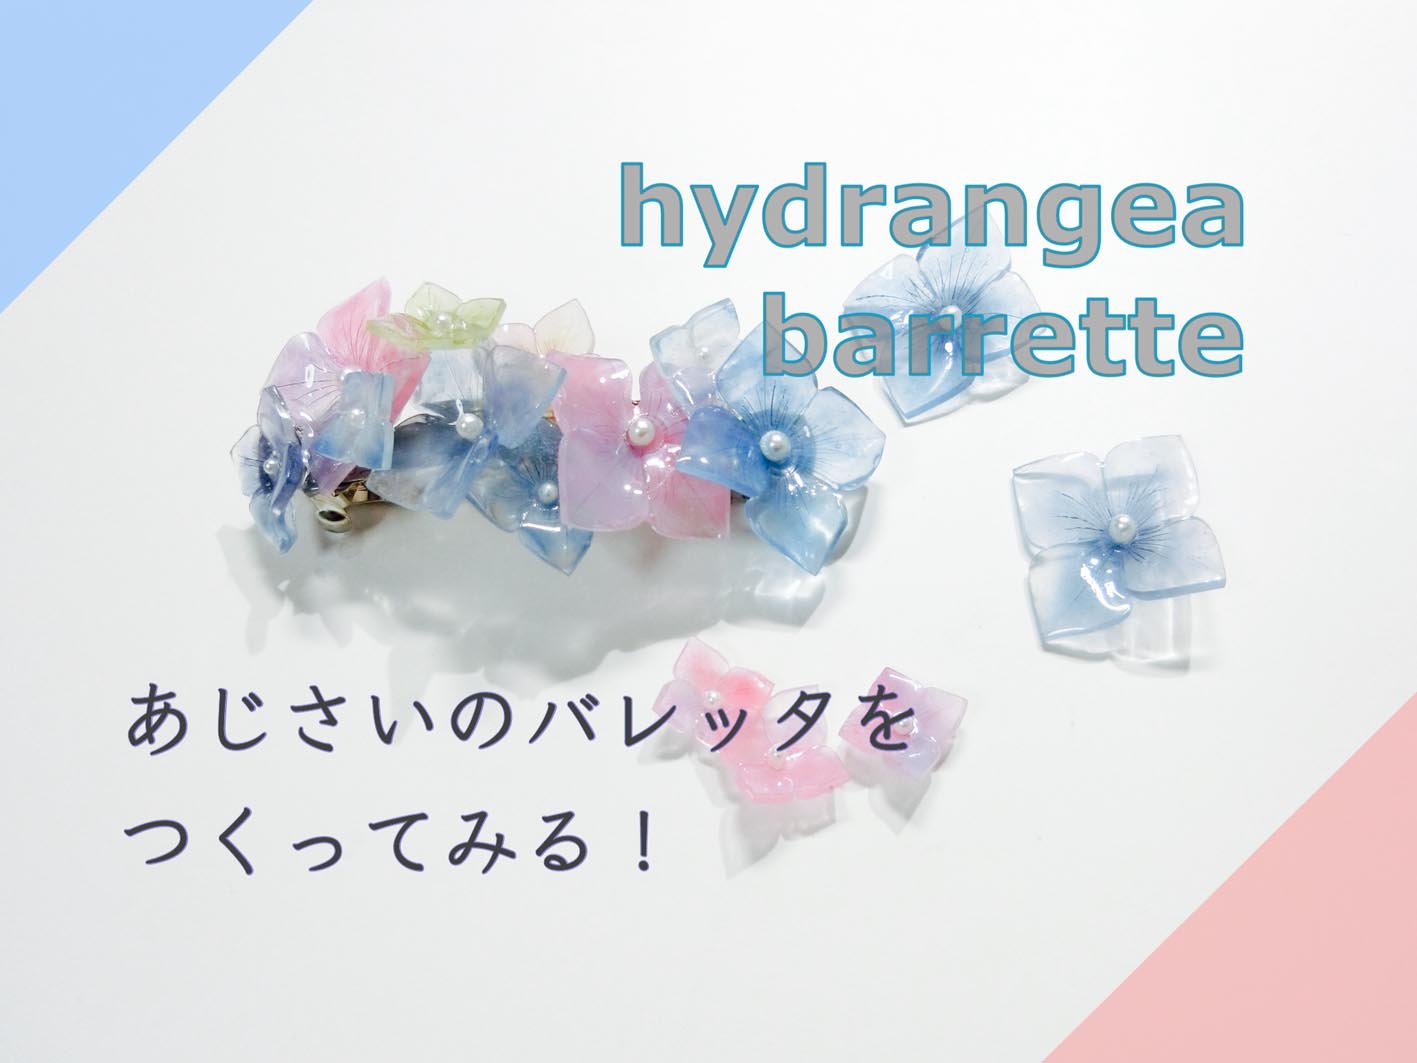 動画 型紙から自作 プラバンであじさいのバレッタ作ってみた How To Make Hydrangea With Shrink Plastics Suisuisuizoo